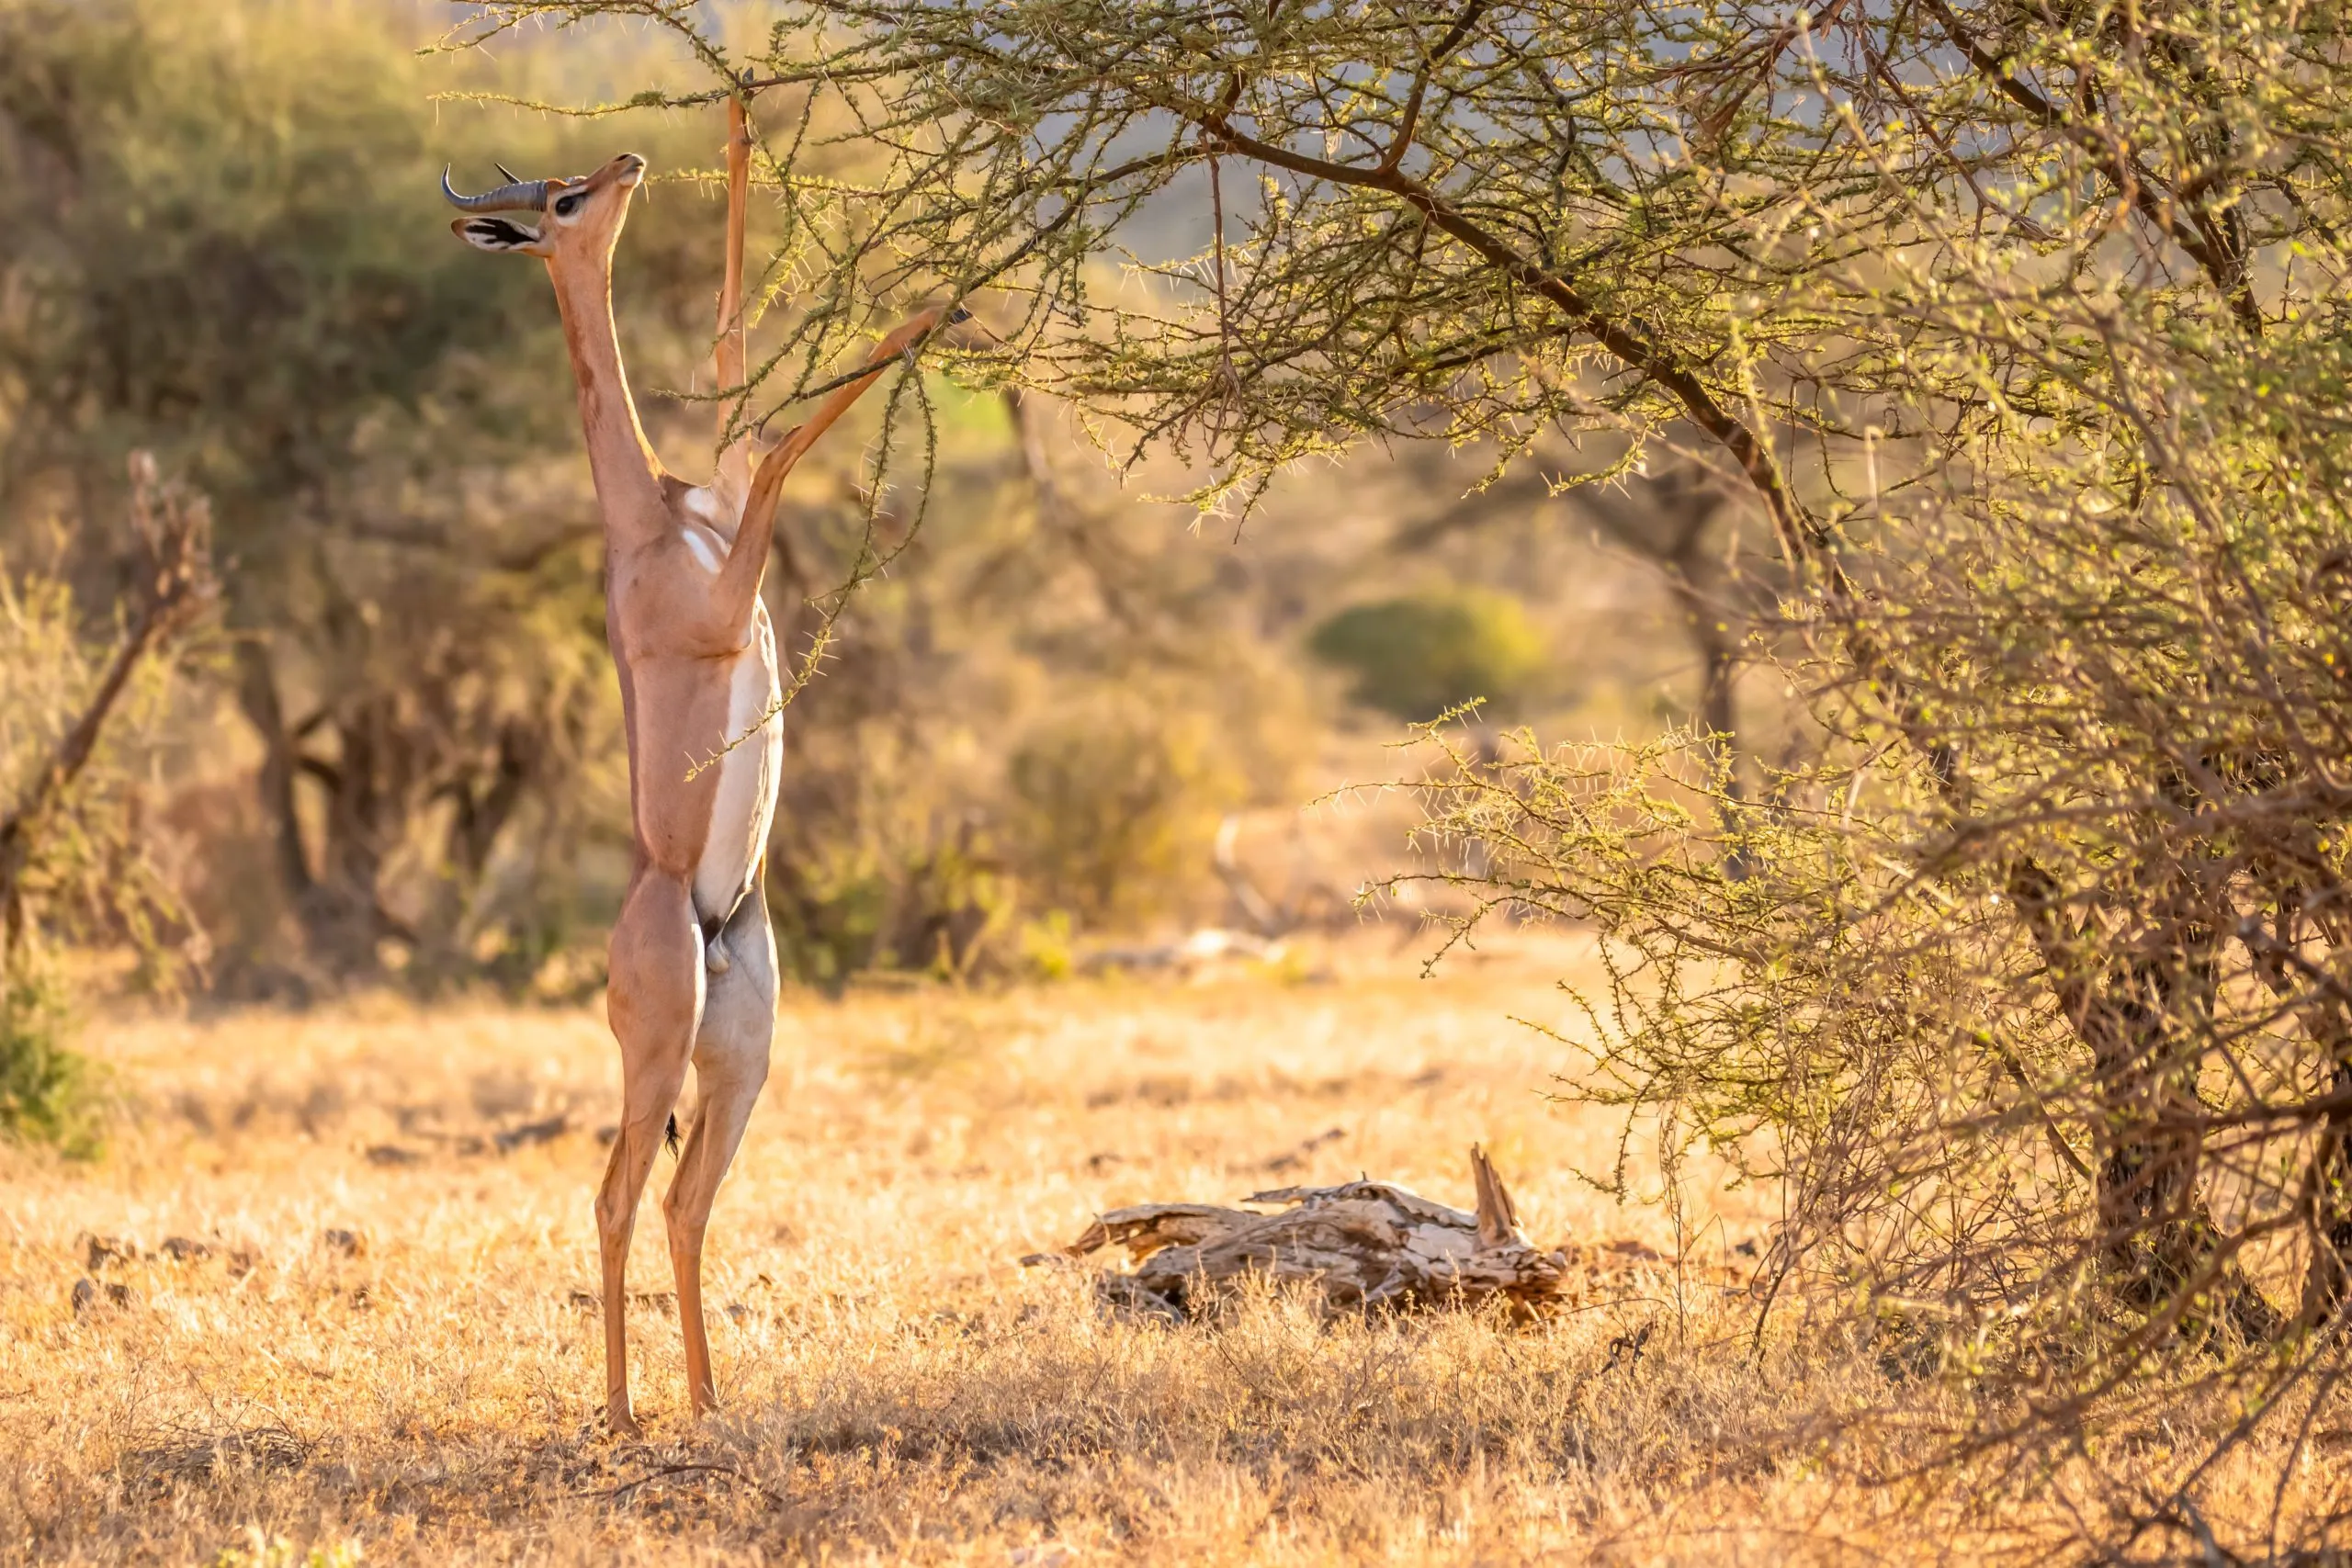 Gerenuk, Litocranius walleri også sjiraffgaselle,langhalset antilope, lang slank hals og lemmer,står på bakbena under fôring av blader. Afrikanske kveldsfarger. Samburu nasjonalreservat, Kenya